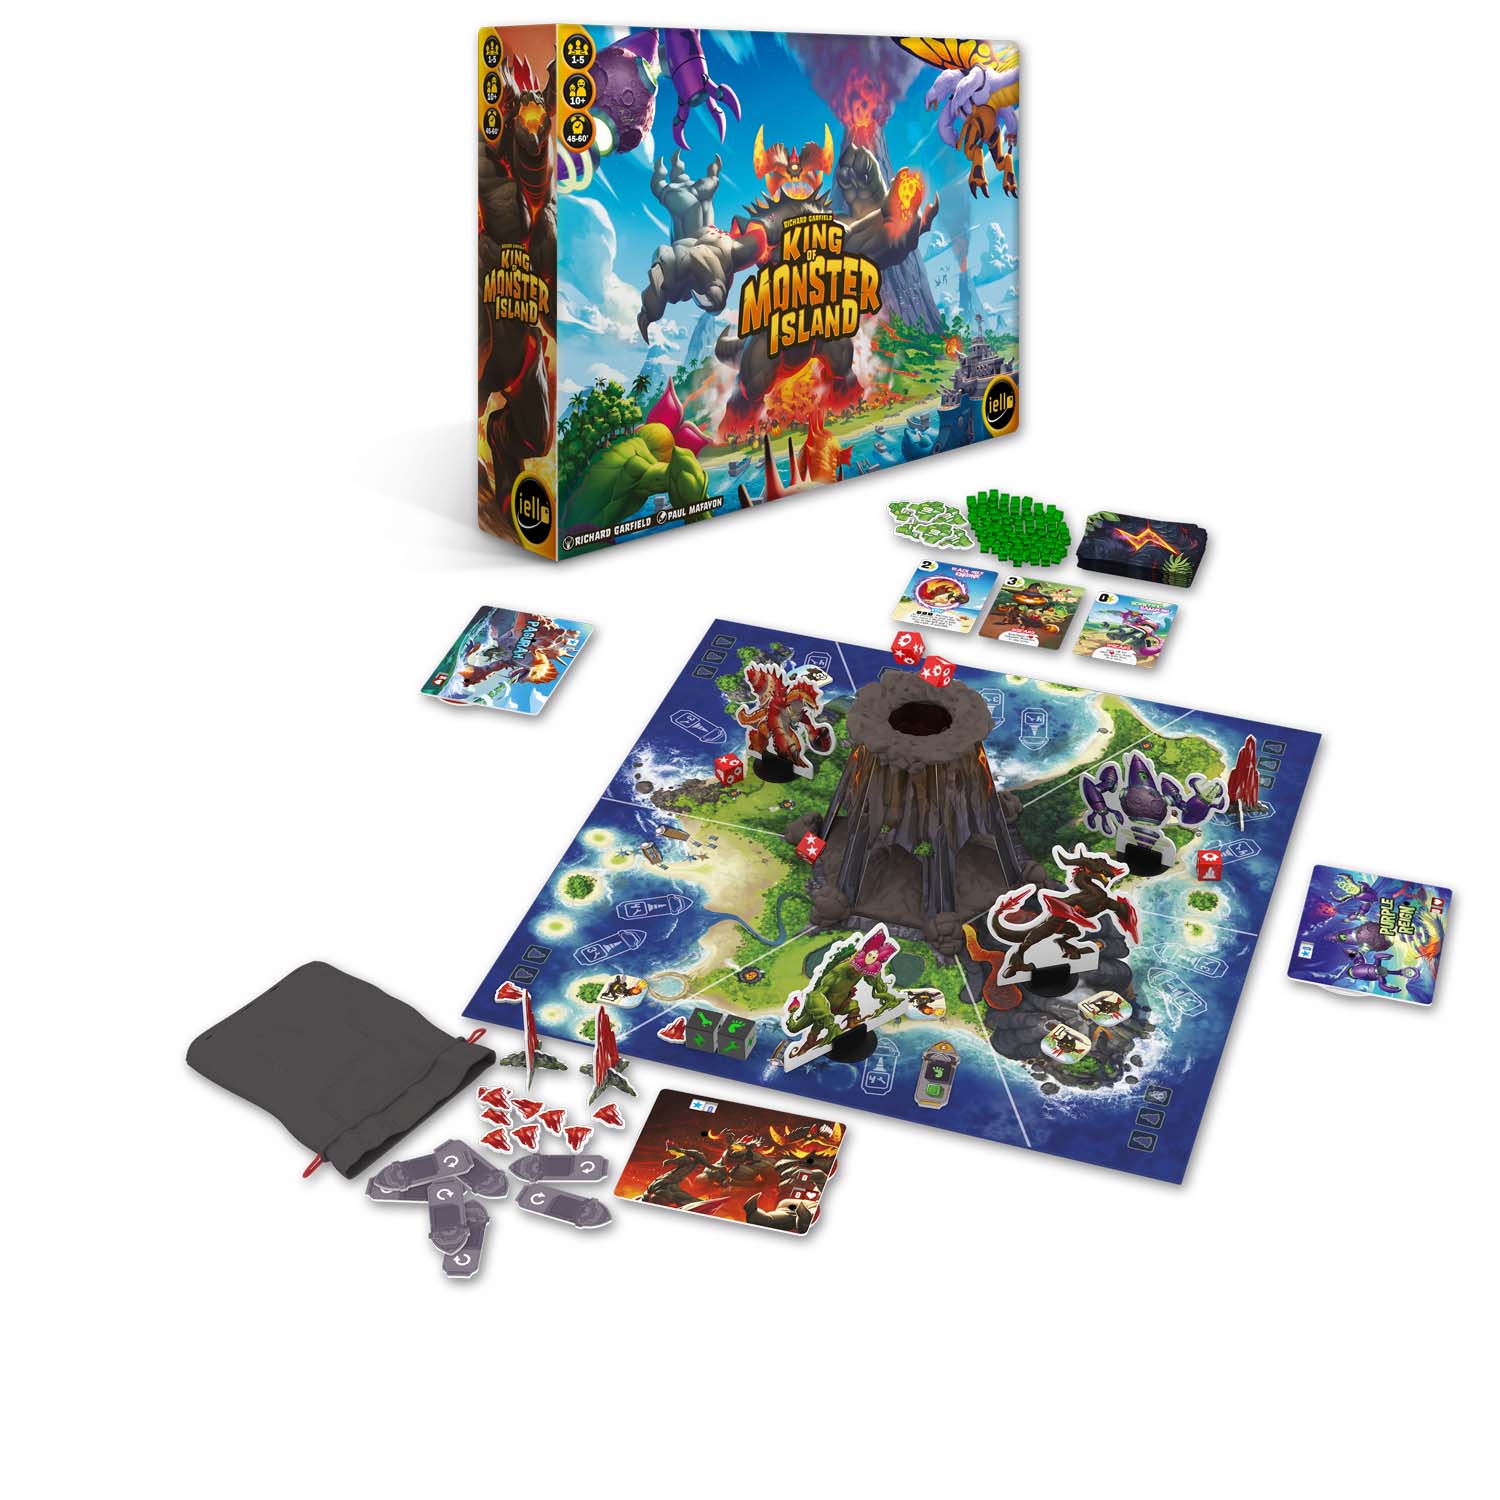 Abbildung Box und Inhalt zum Spiel King of Monster Island von Iello